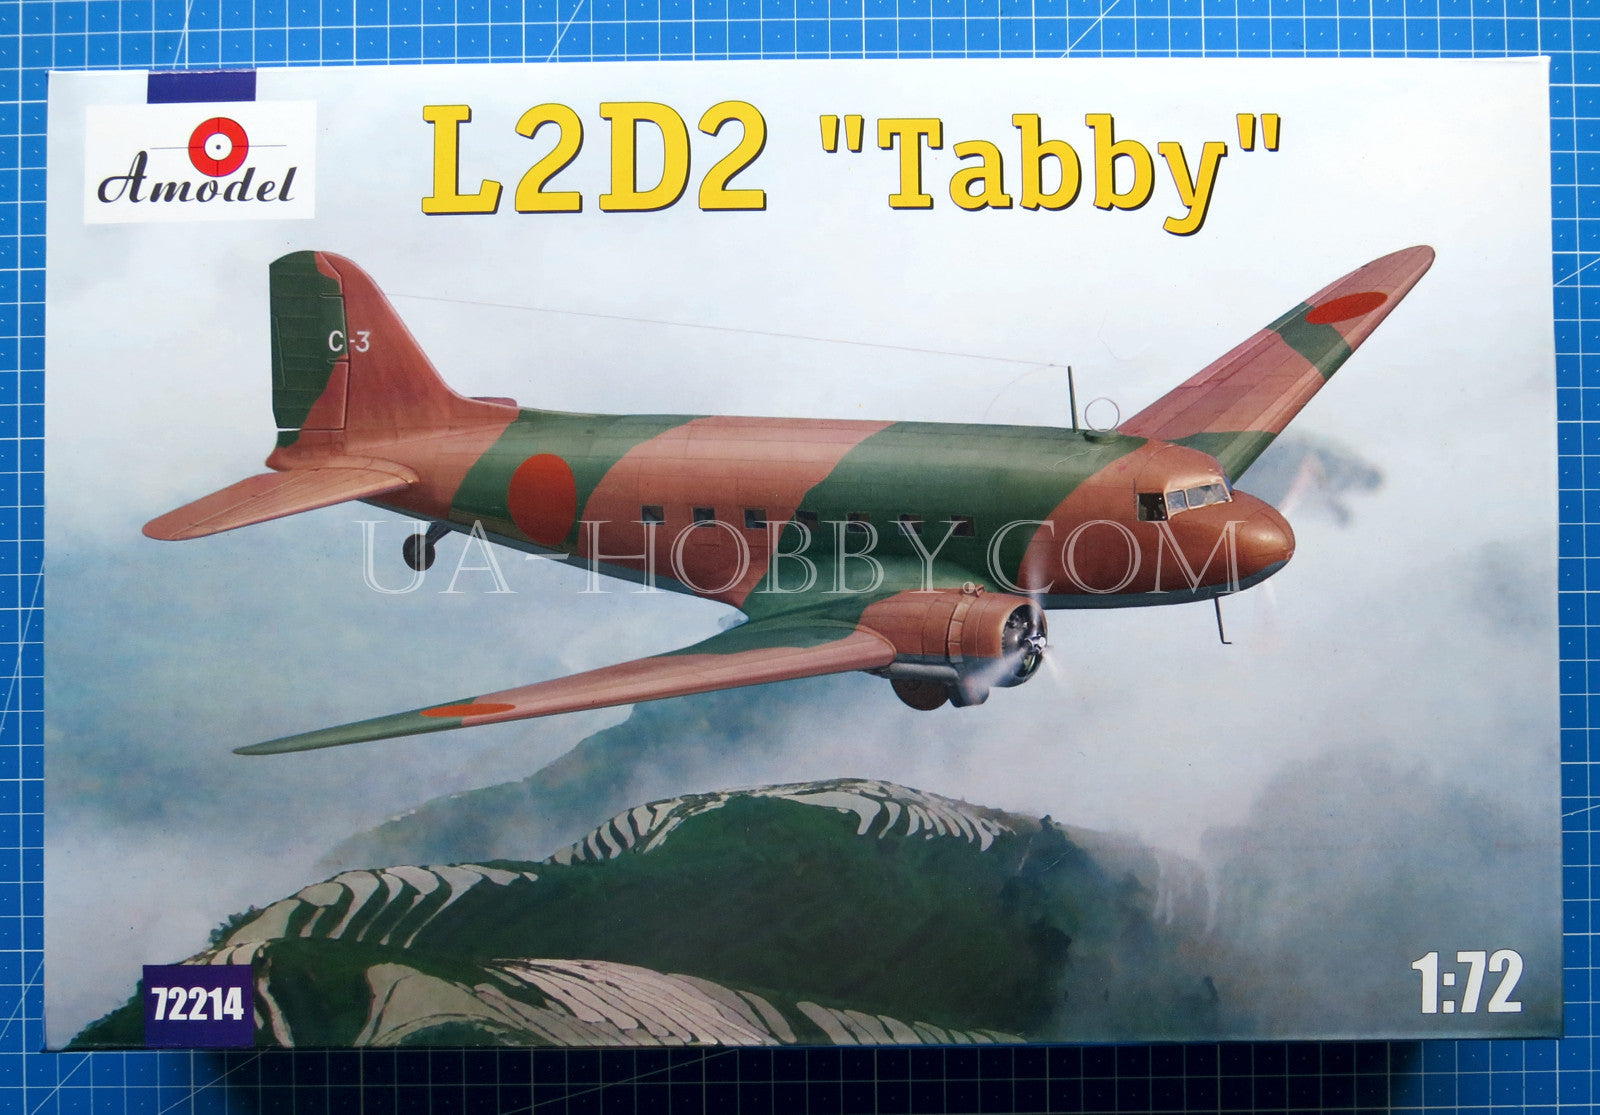 1/72 Nakajima L2D2 Tabby. Amodel 72214 – UA-hobby